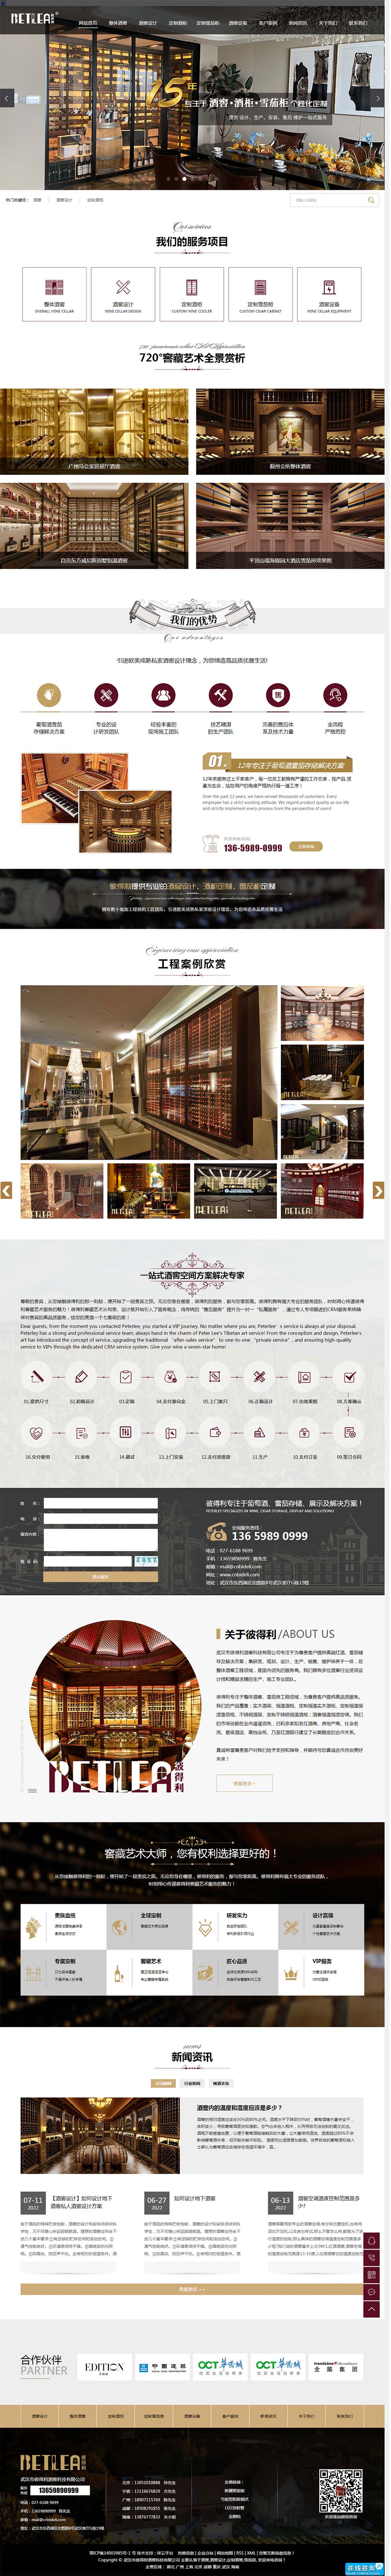 武汉网站设计客户案例武汉市彼得利酒窖科技有限公司